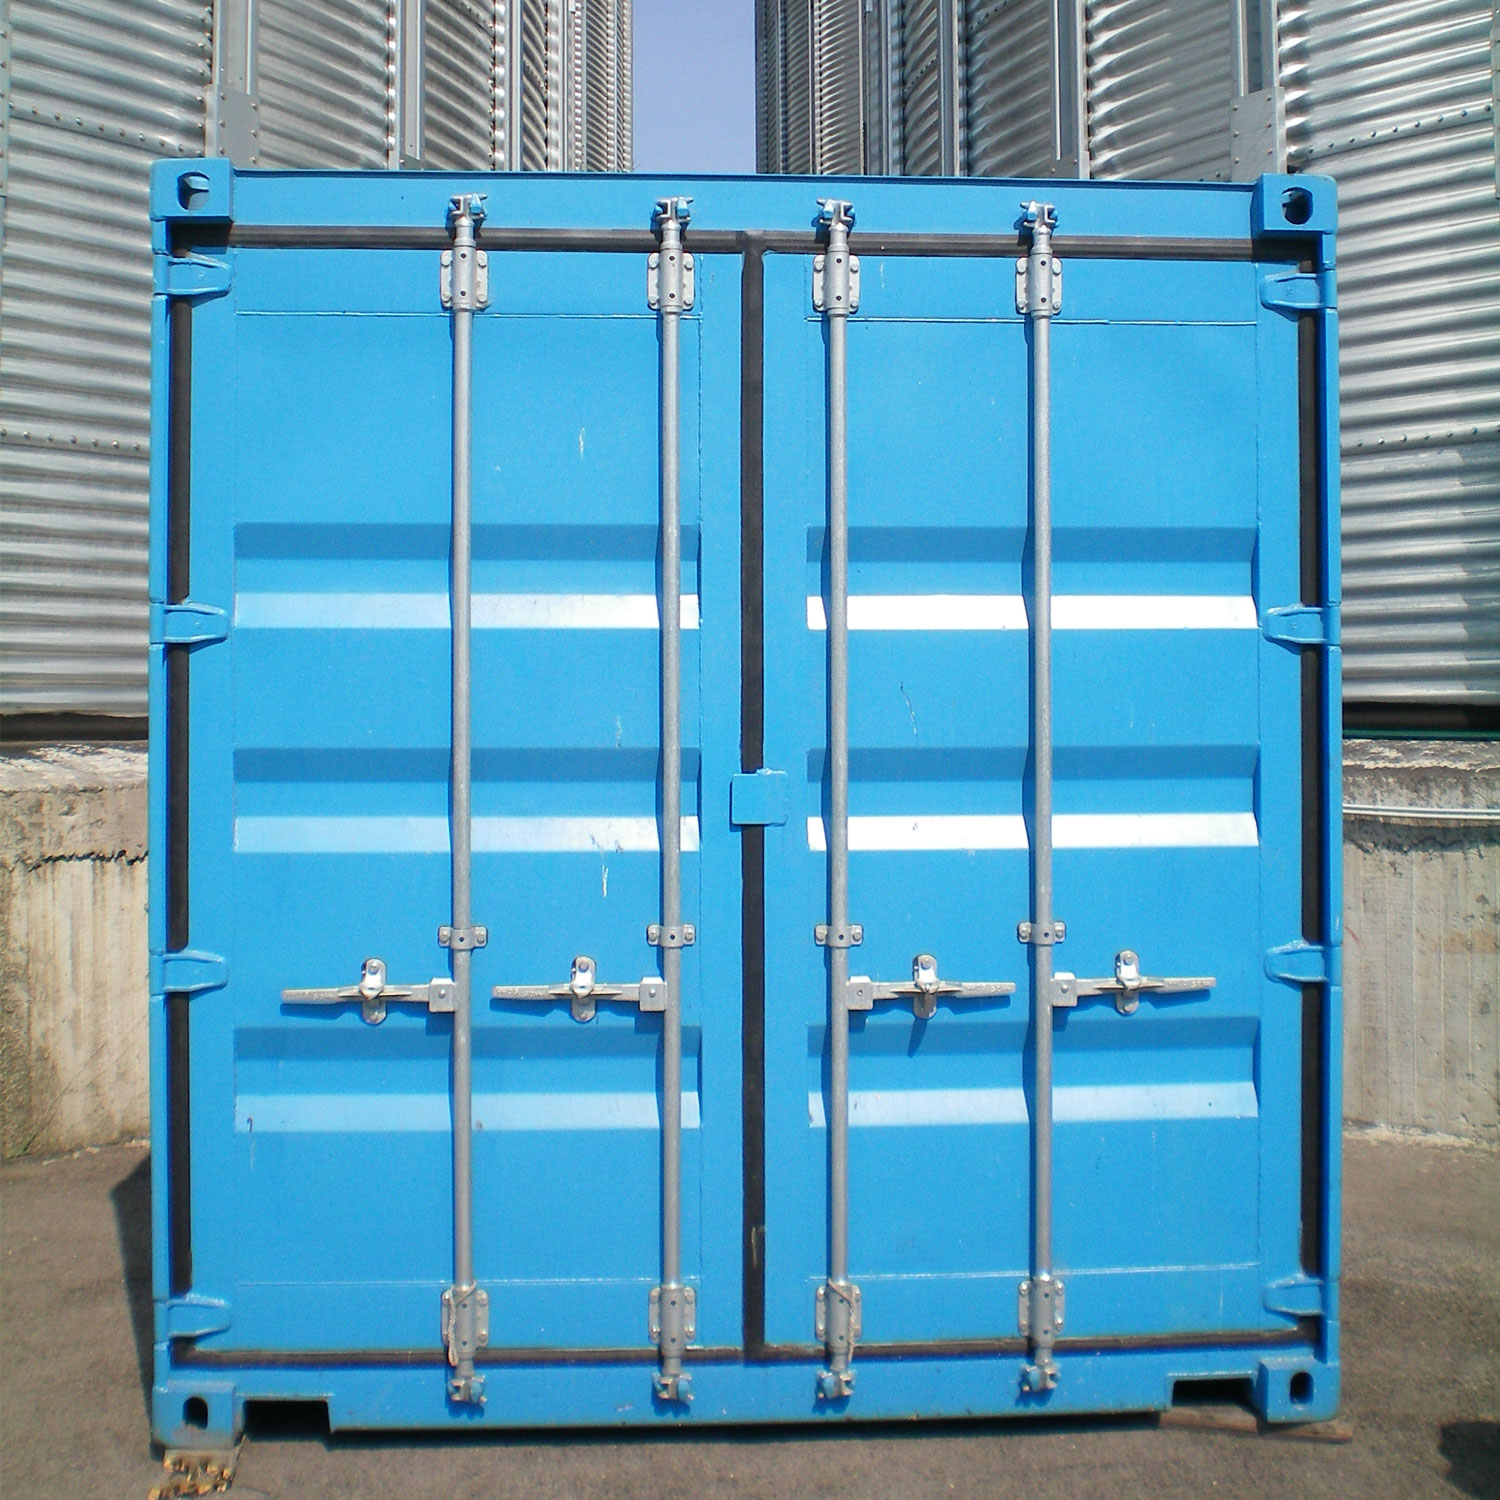 foto BOGE BLUEprotect
La solución de contenedores ecológica para silos de cereales, malterías y similar